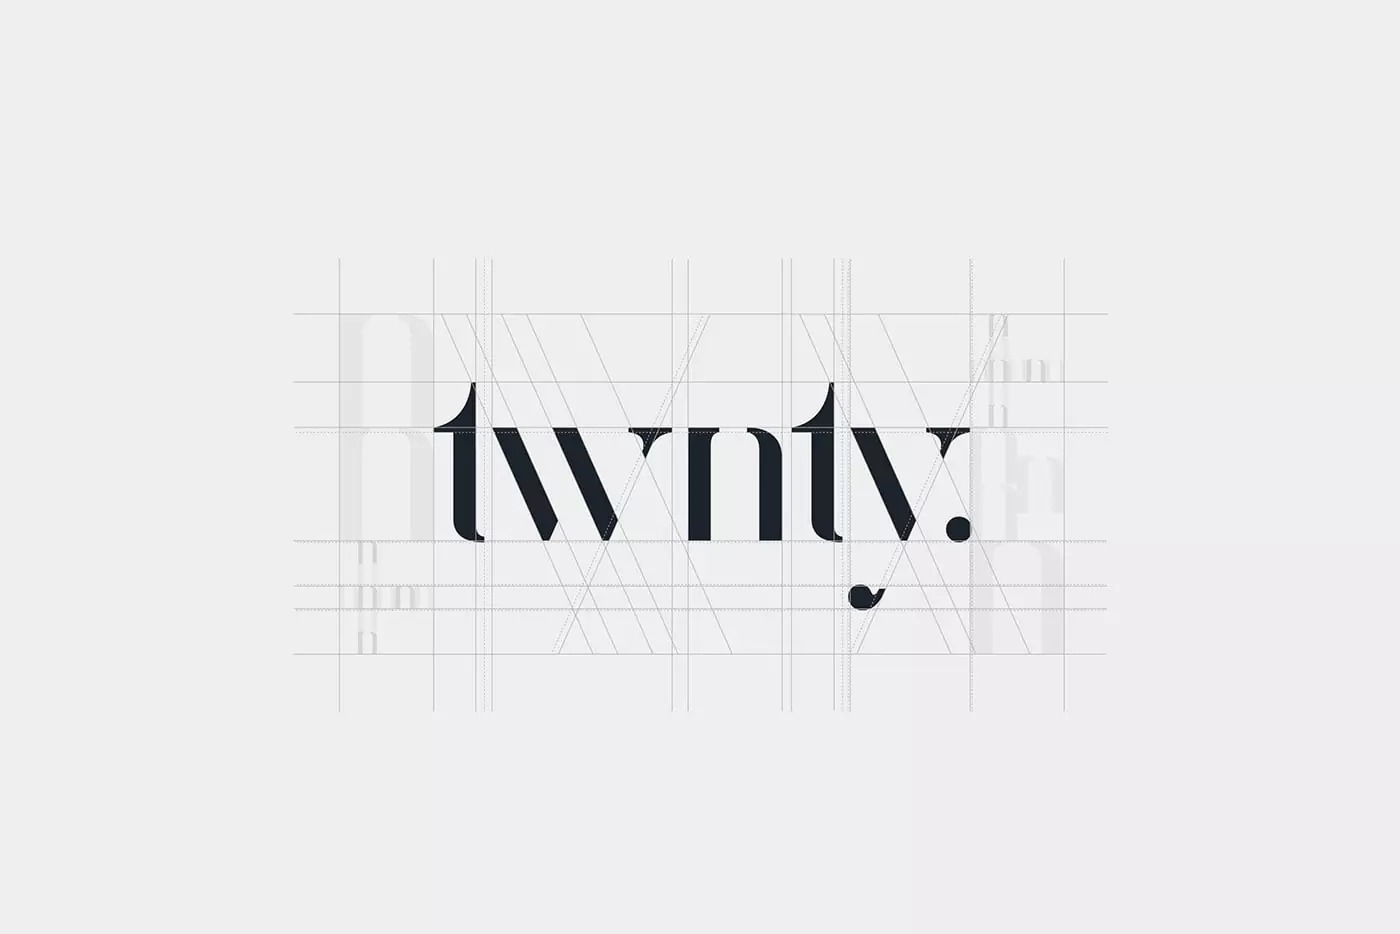 广告传播机构twnty品牌形象设计